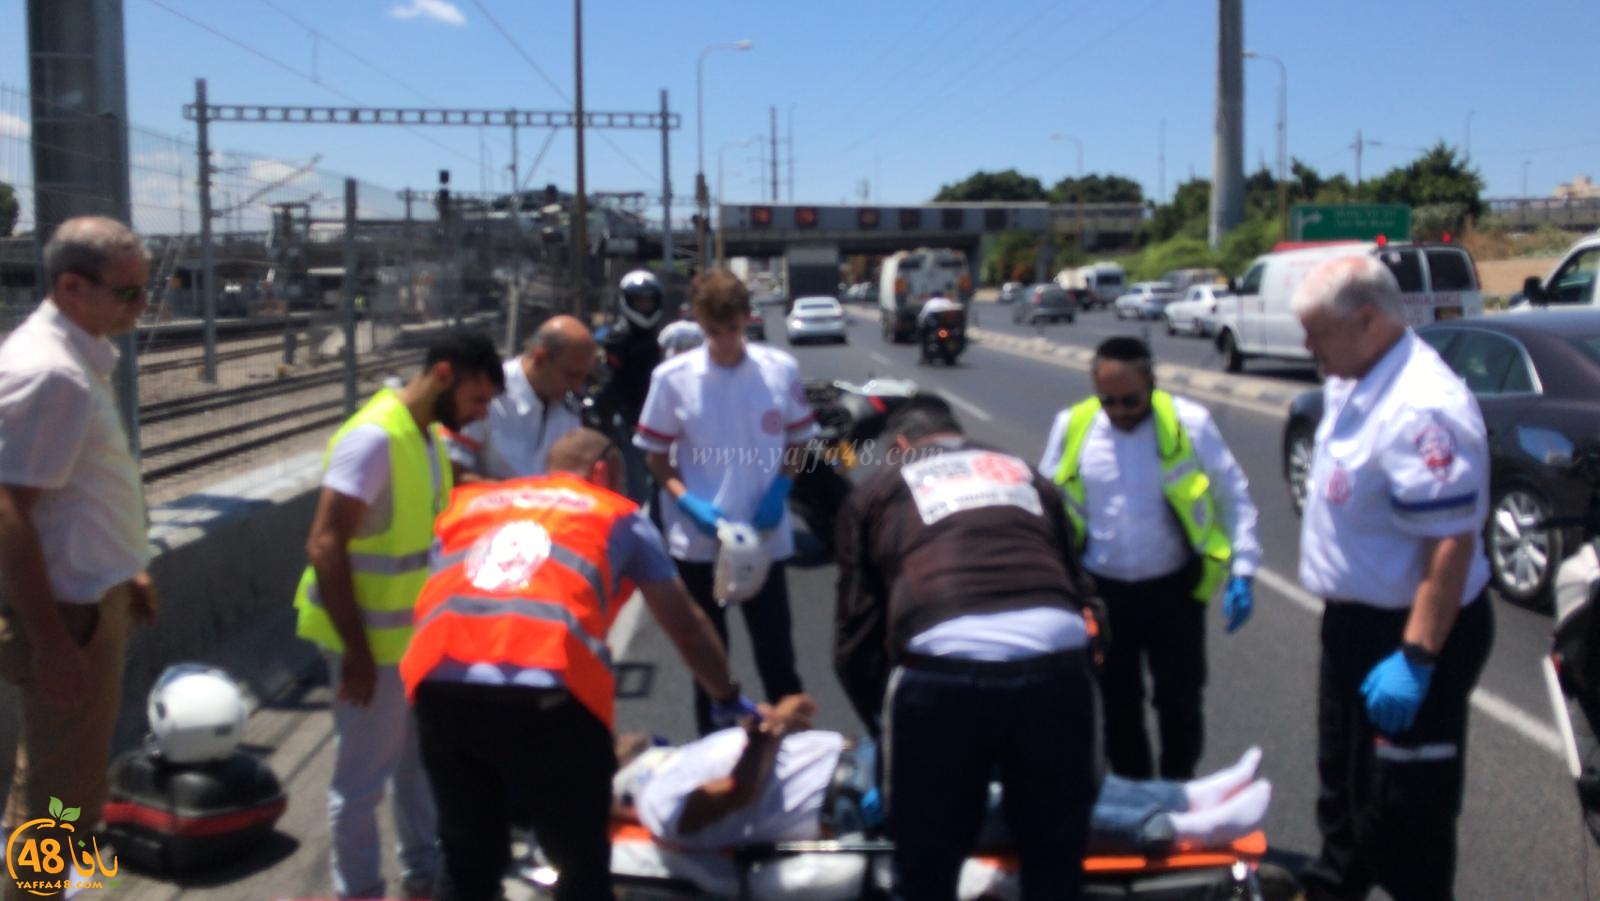   صور: إصابة متوسطة لراكب دراجة نارية بحادث طرق ذاتي في يافا